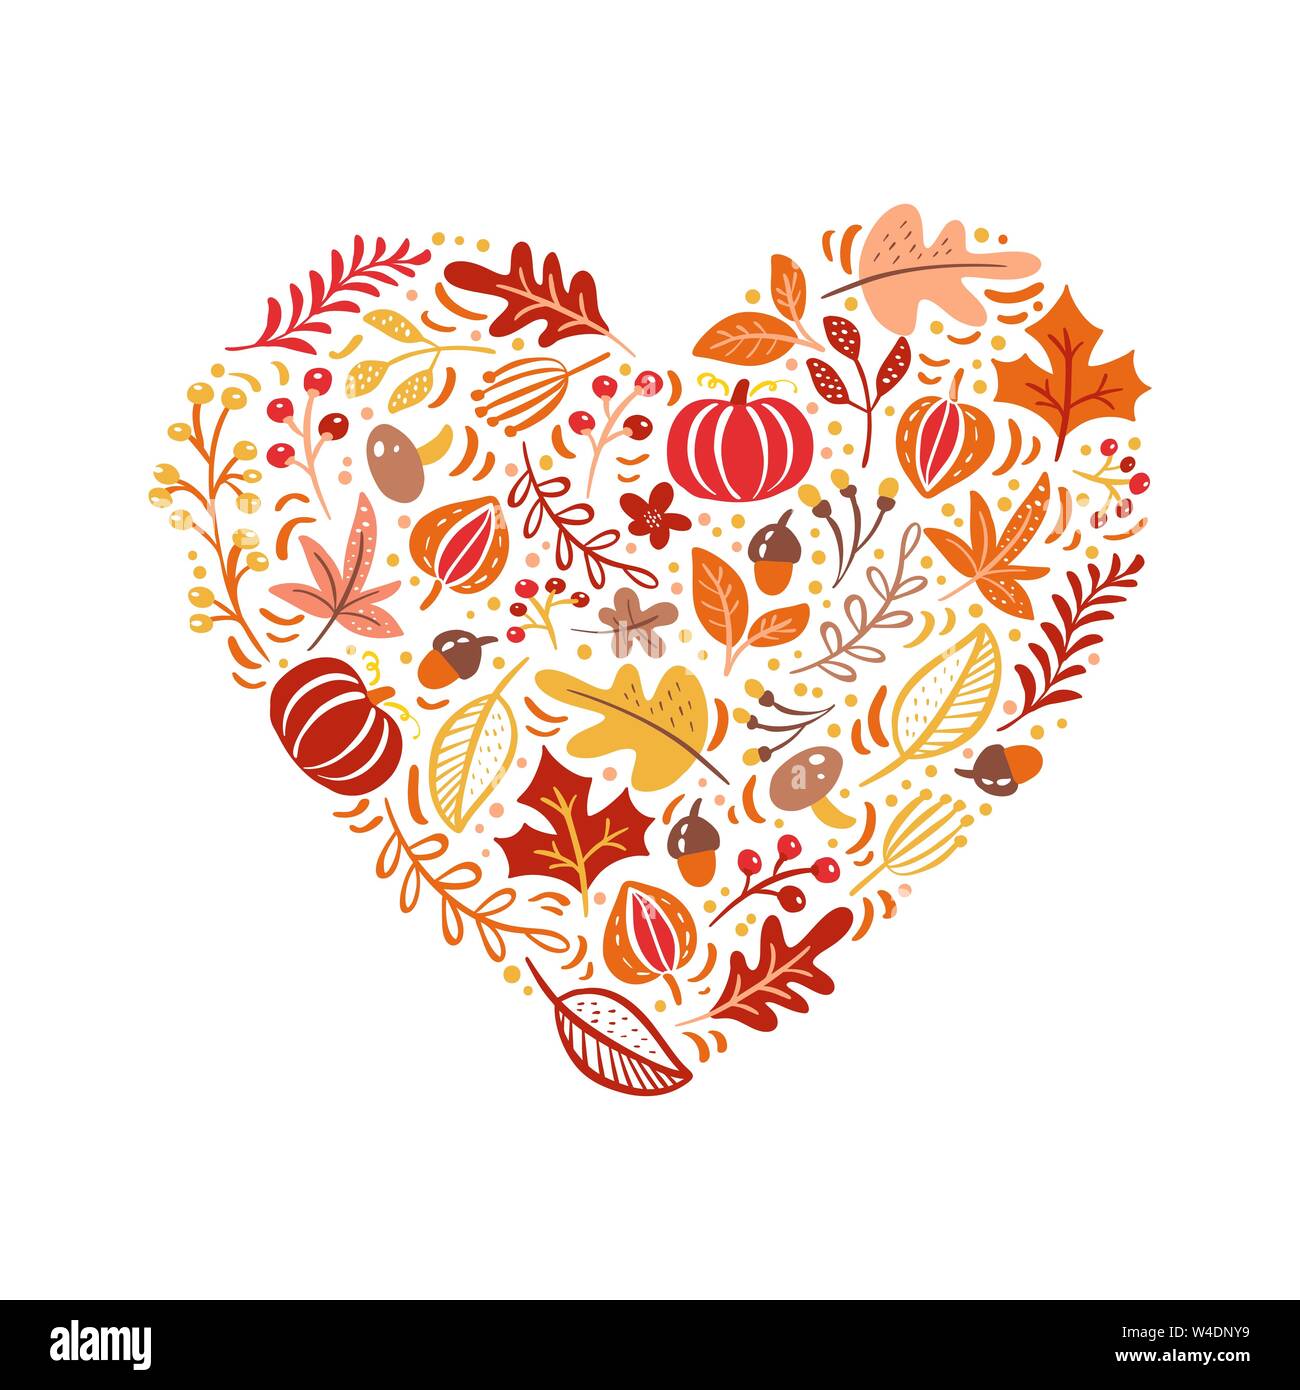 Les éléments réalisés en automne vecteur cœur d'amour. Champignons, acorn, feuilles d'érable et la citrouille isolé sur fond blanc. Parfait pour vacances saisonnières Illustration de Vecteur